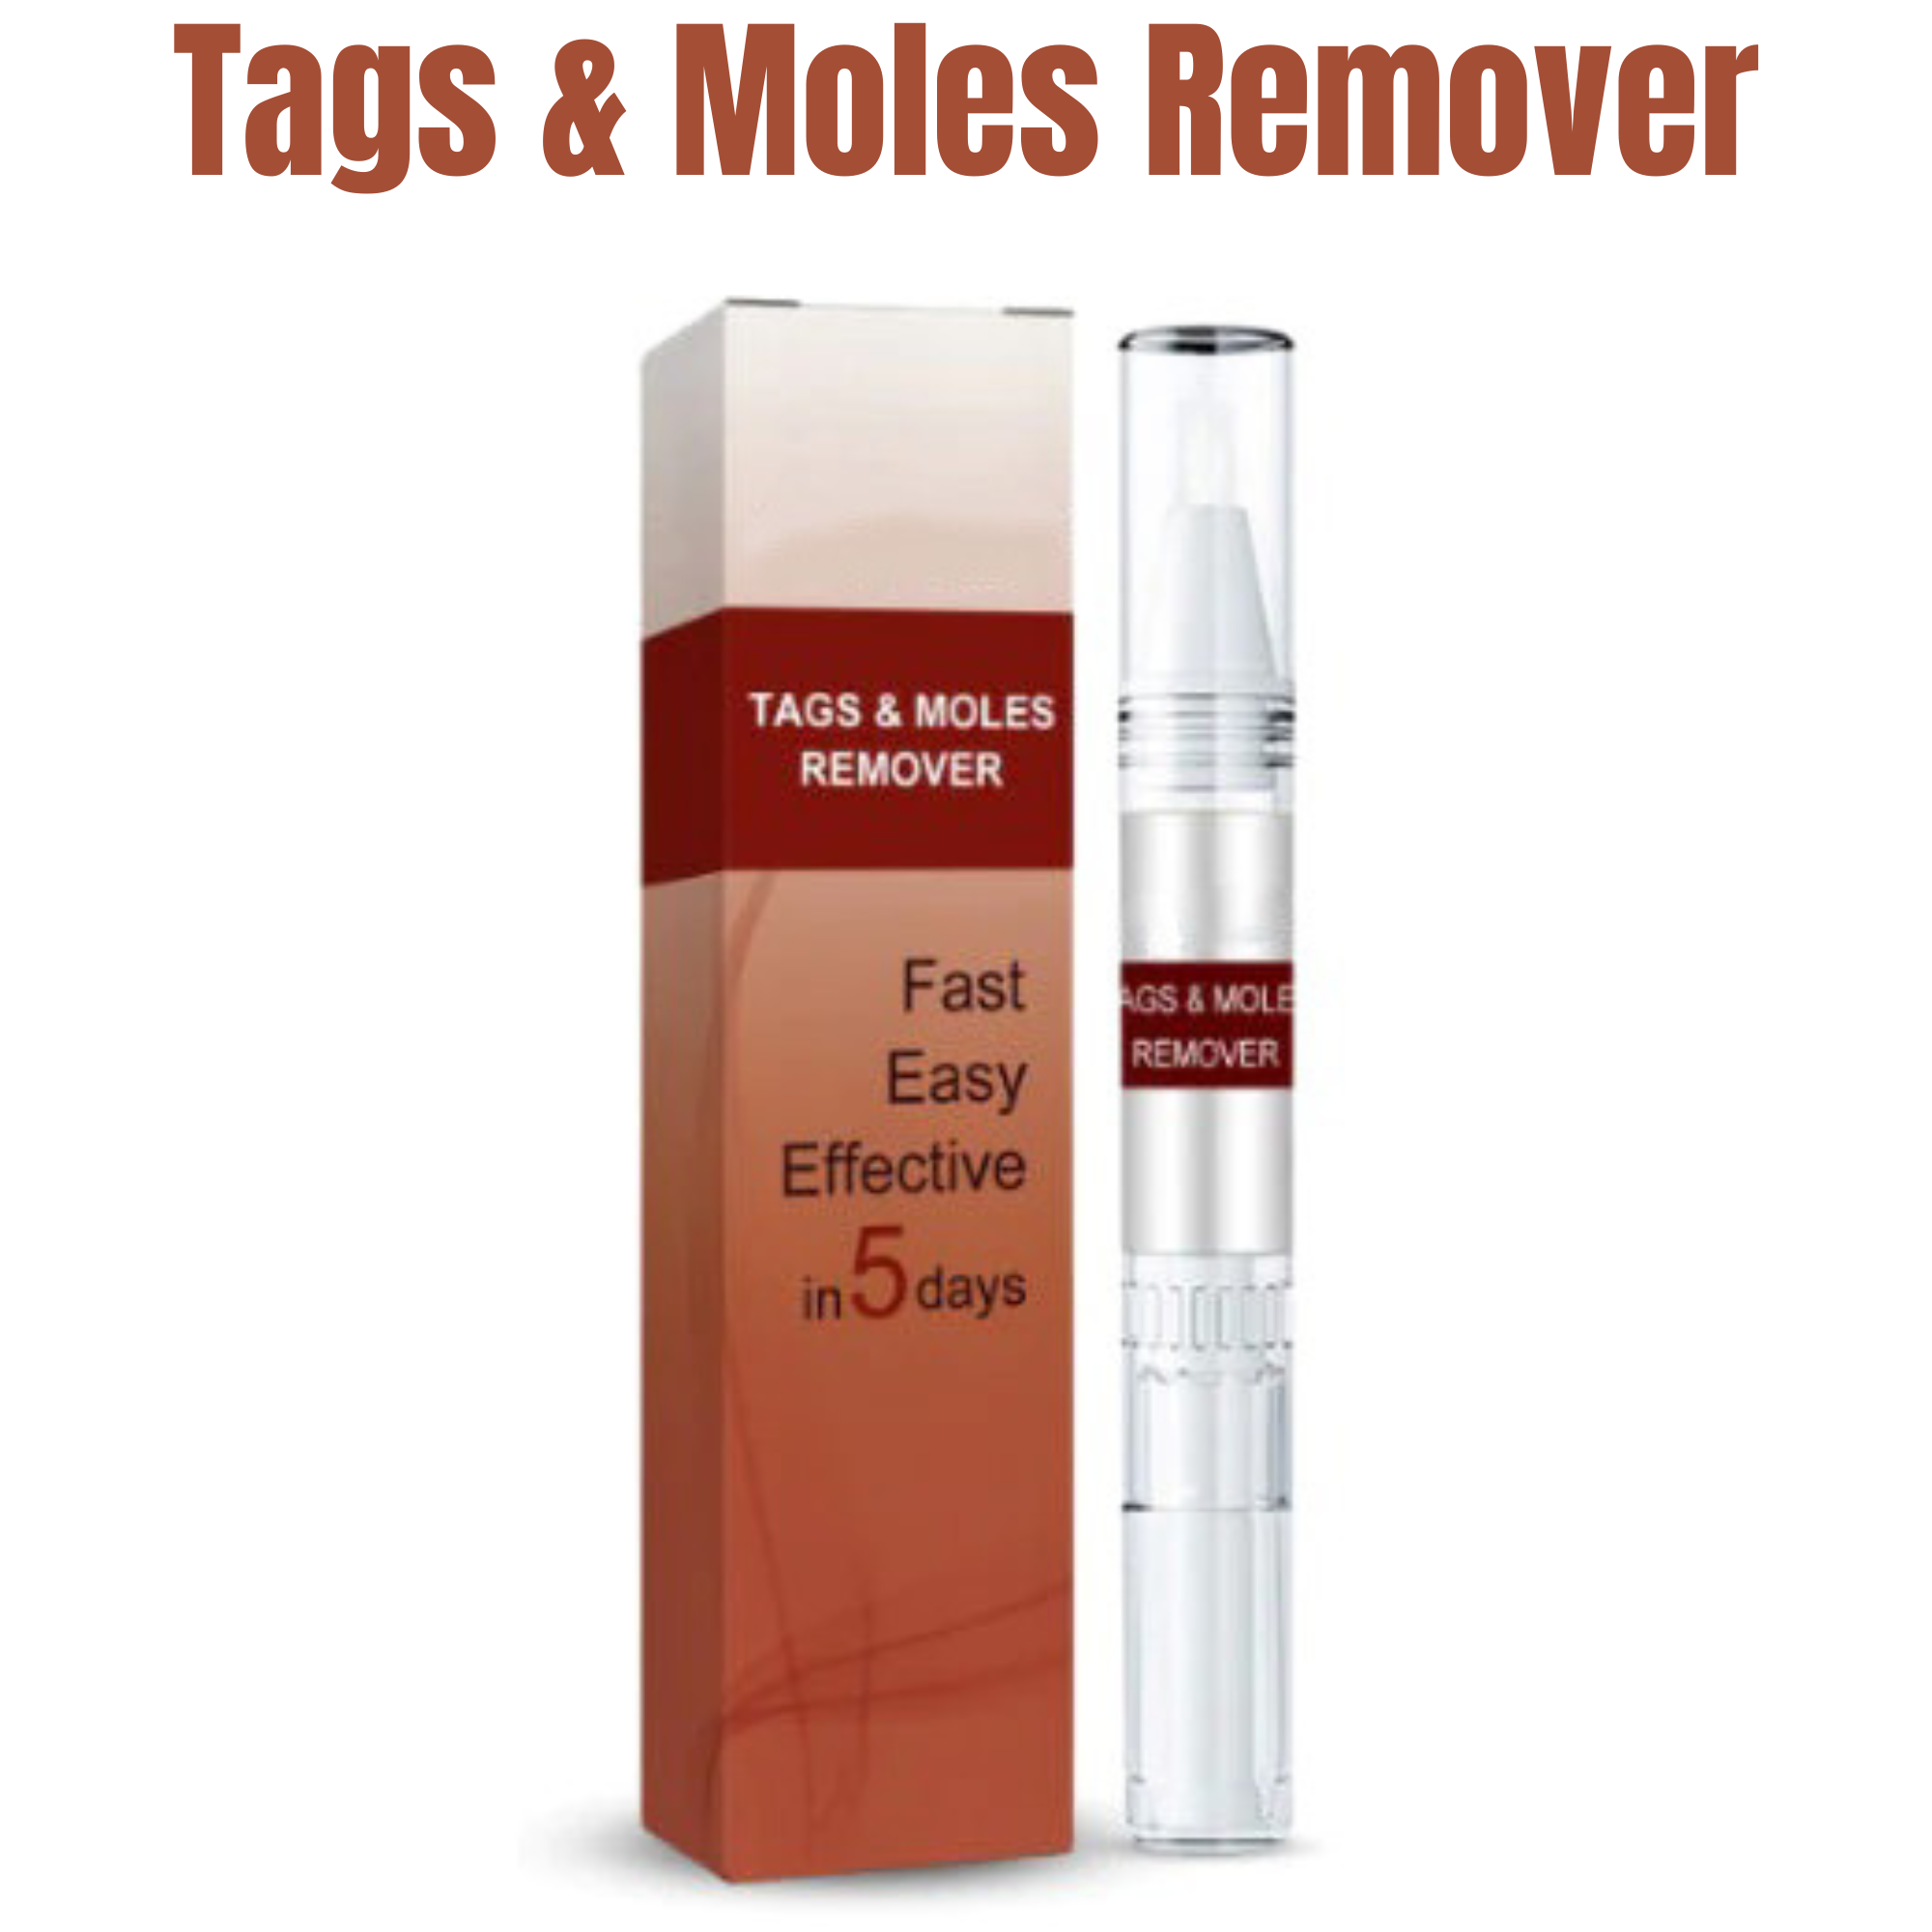 Tags & Moles Remover